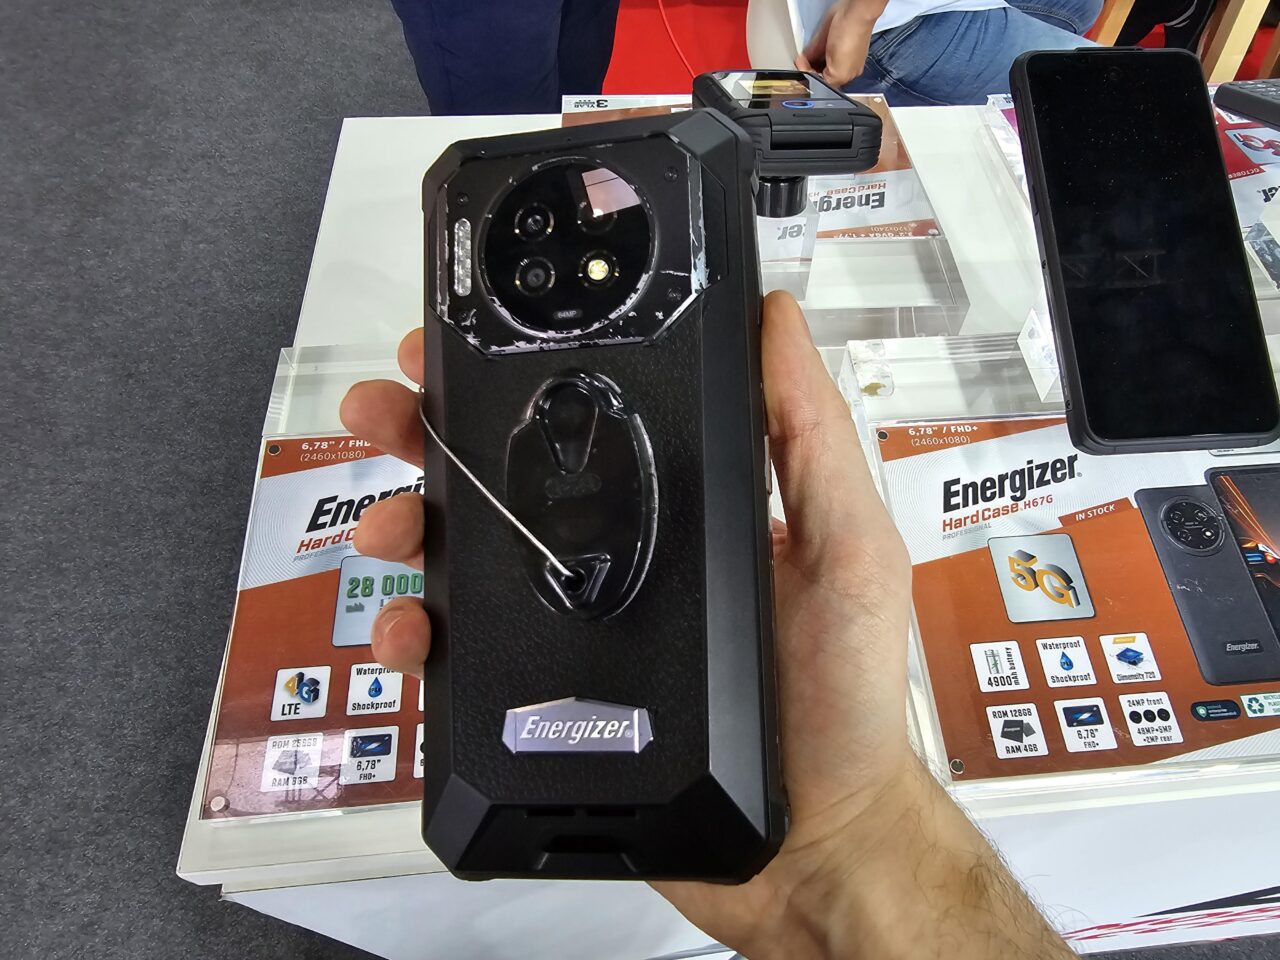 Osoba trzymająca w ręku czarny, wytrzymały smartfon Energizer Hard Case P28K z dodatkowym modułem aparatu oraz przyczepionym uchwytem na palec, na tle plakatów z informacjami technicznymi o telefonach.